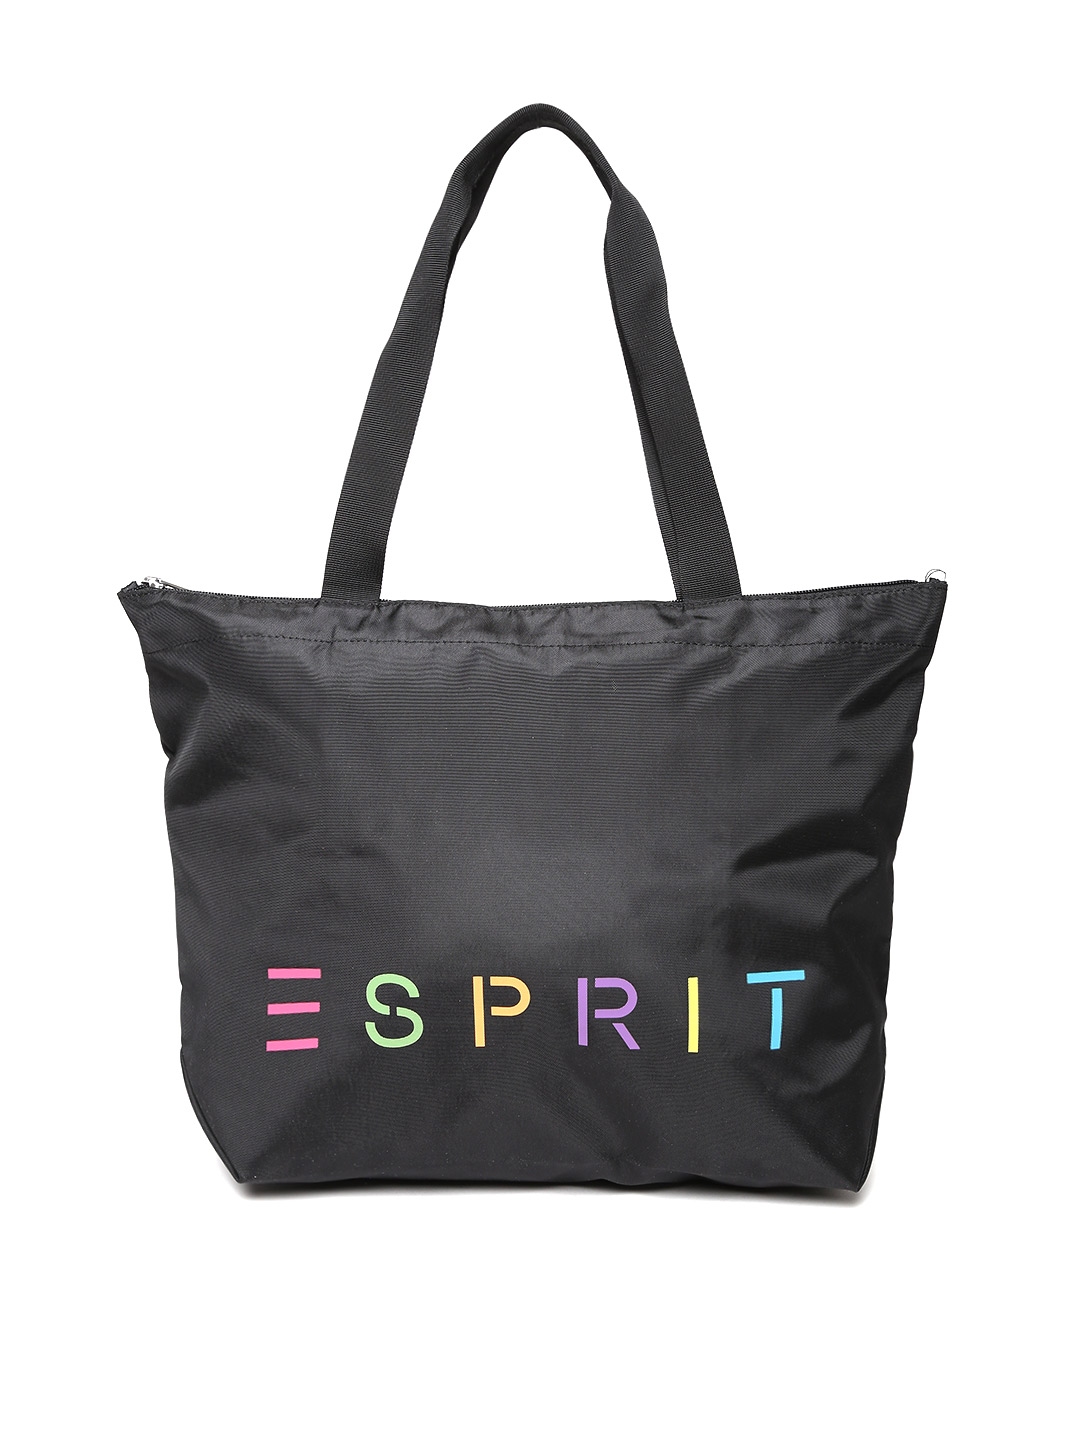 Buy ESPRIT Black Printed Tote Bag Handbags for Women